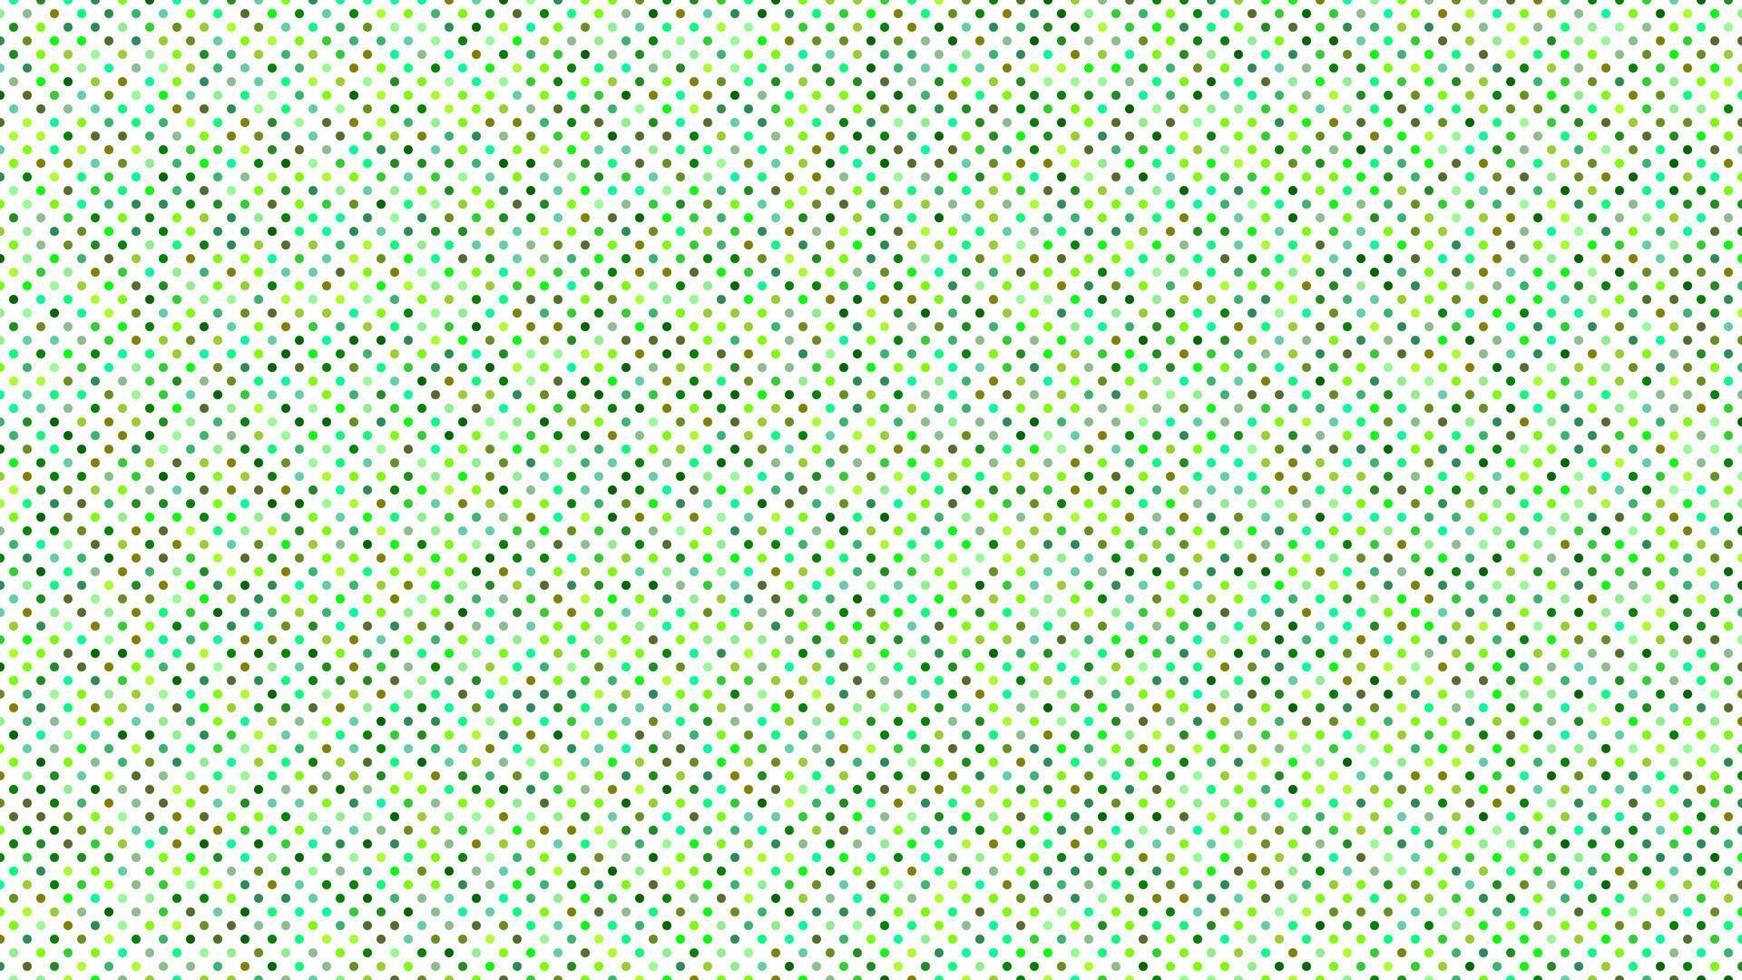 Grün Farbe Polka Punkte Hintergrund vektor